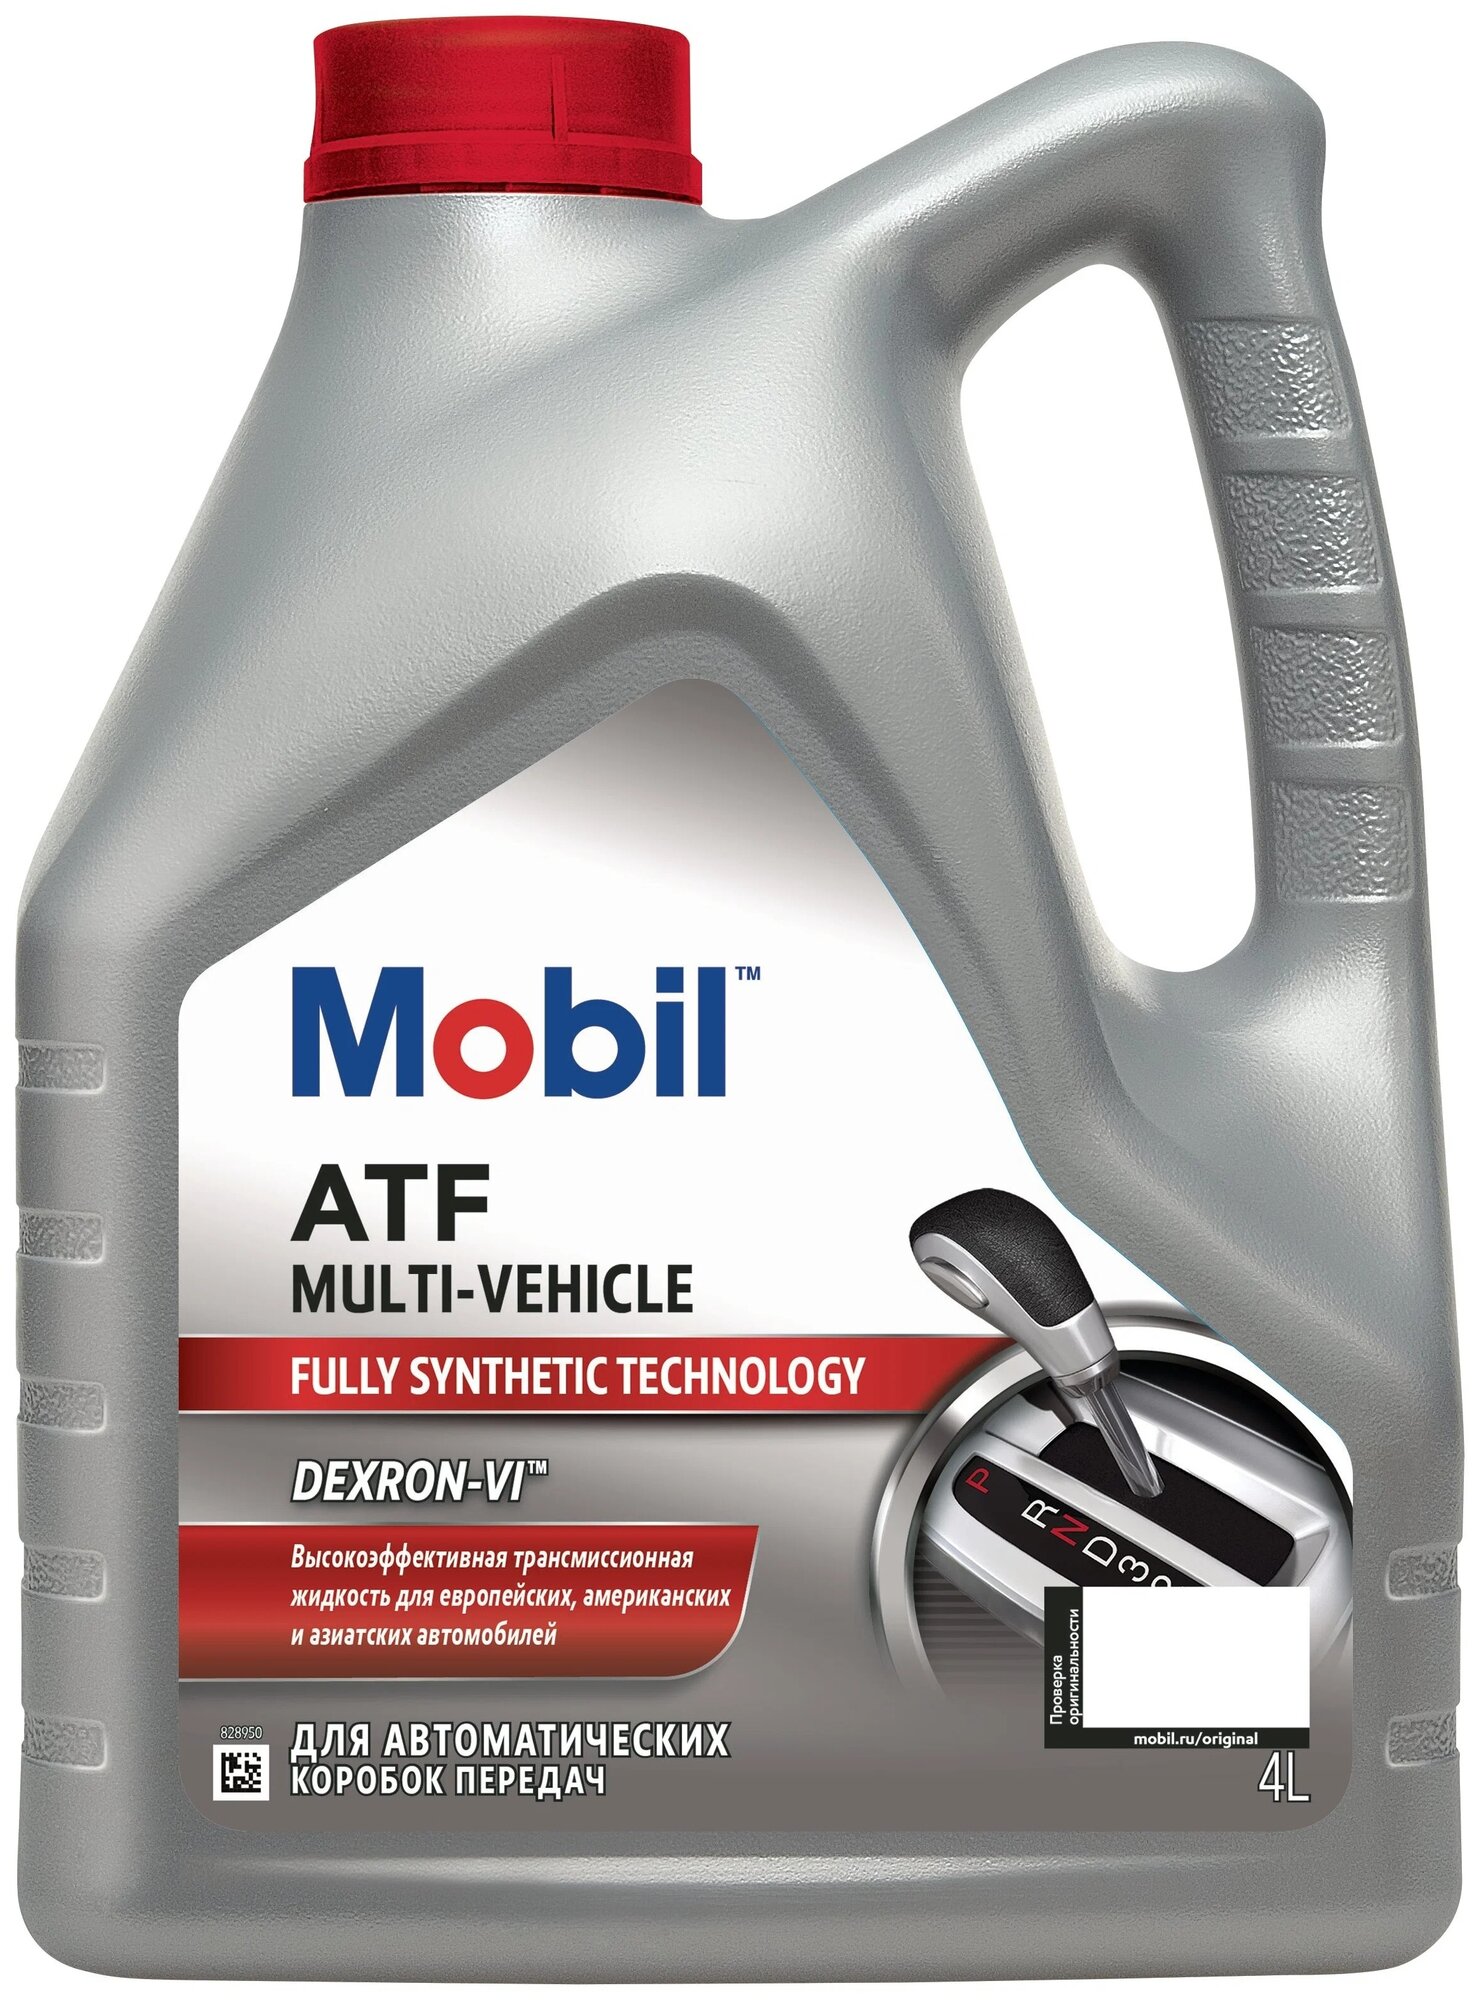 Жидкость для автомат трансмис Mobil ATF Multi-Vehicle, 4л